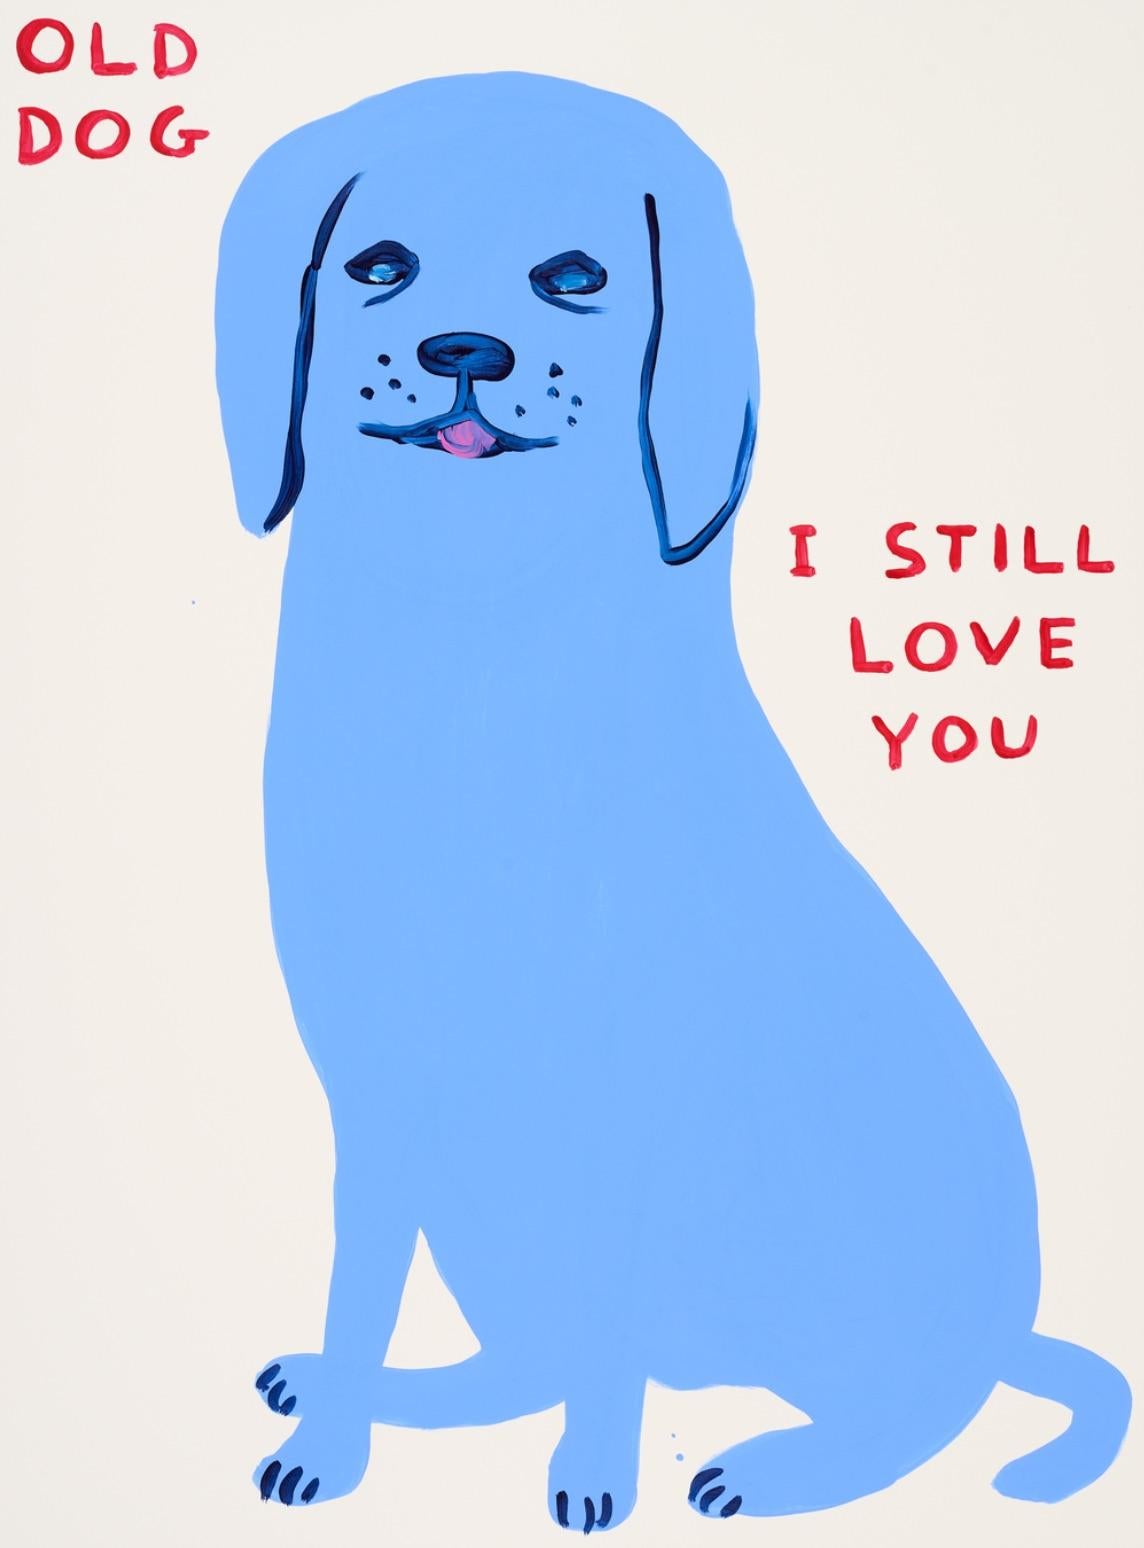 David Shrigley
Sans titre (Old Dog I Still Love You), 2021
Sérigraphie sur papier Somerset Tub Sized 400gsm
76 x 56cm (30 x 22in)
Édition de 125 exemplaires plus 12 épreuves d'artiste.